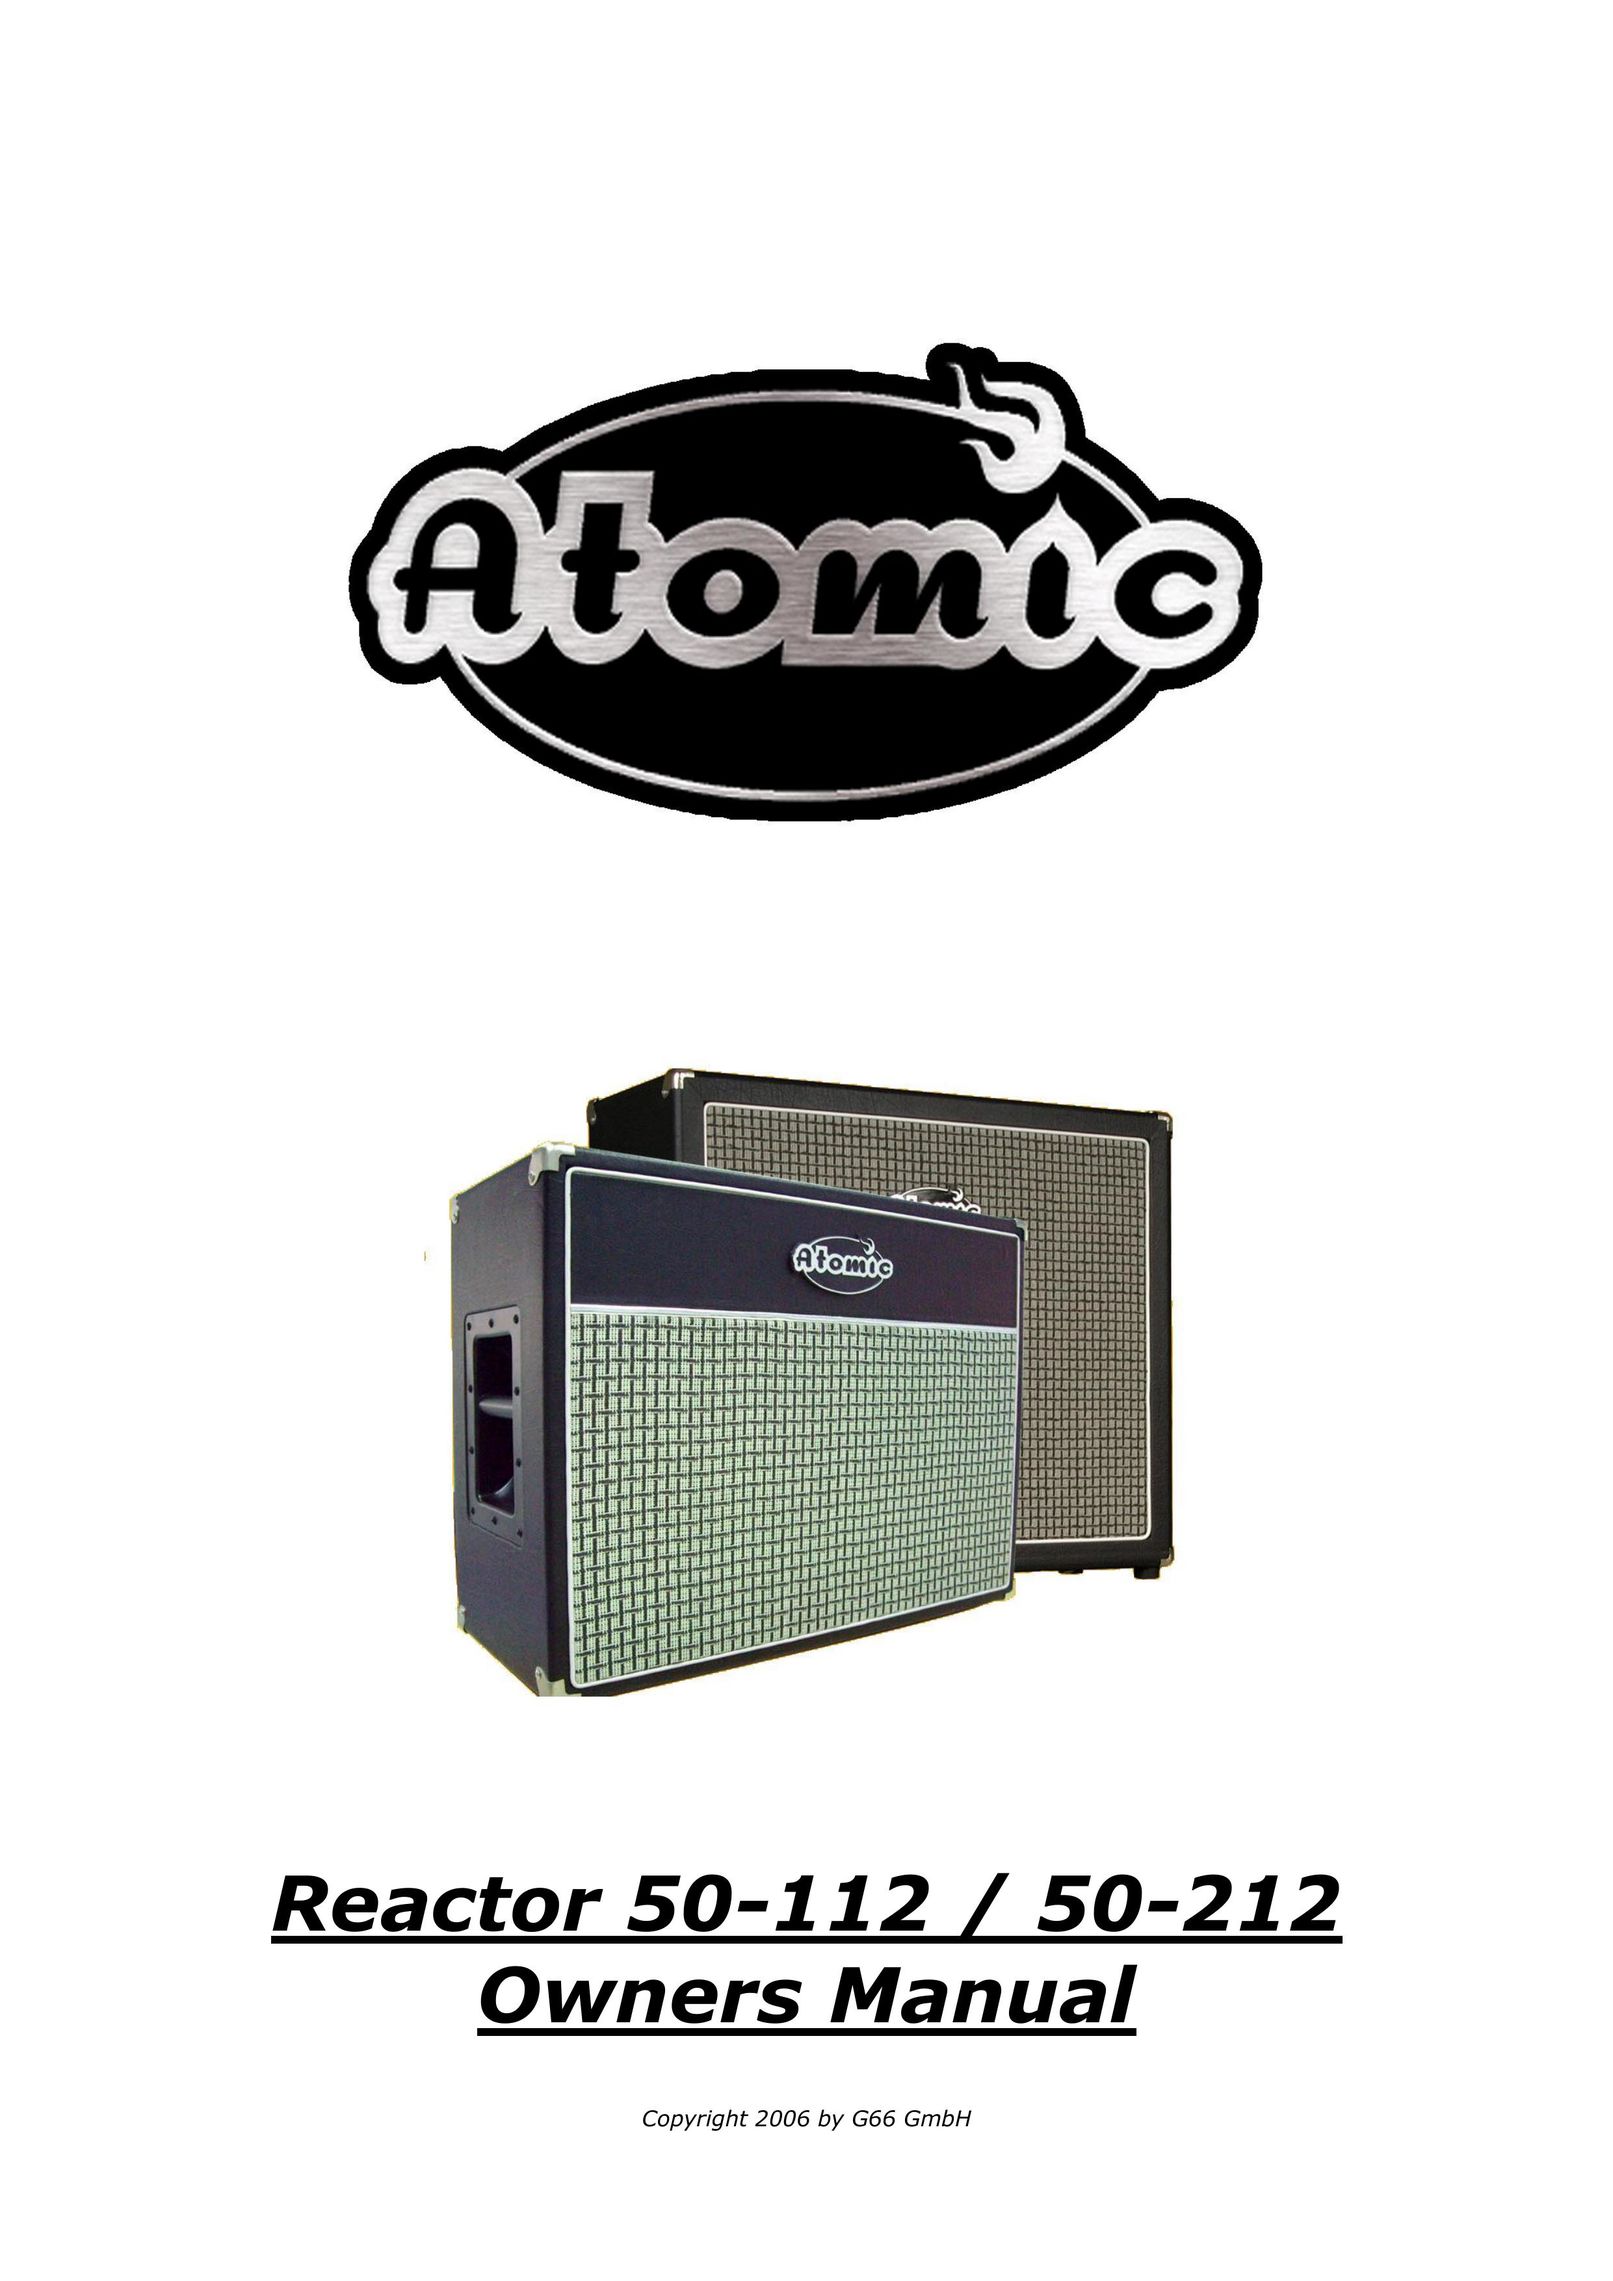 Atomic 50-112 Freezer User Manual